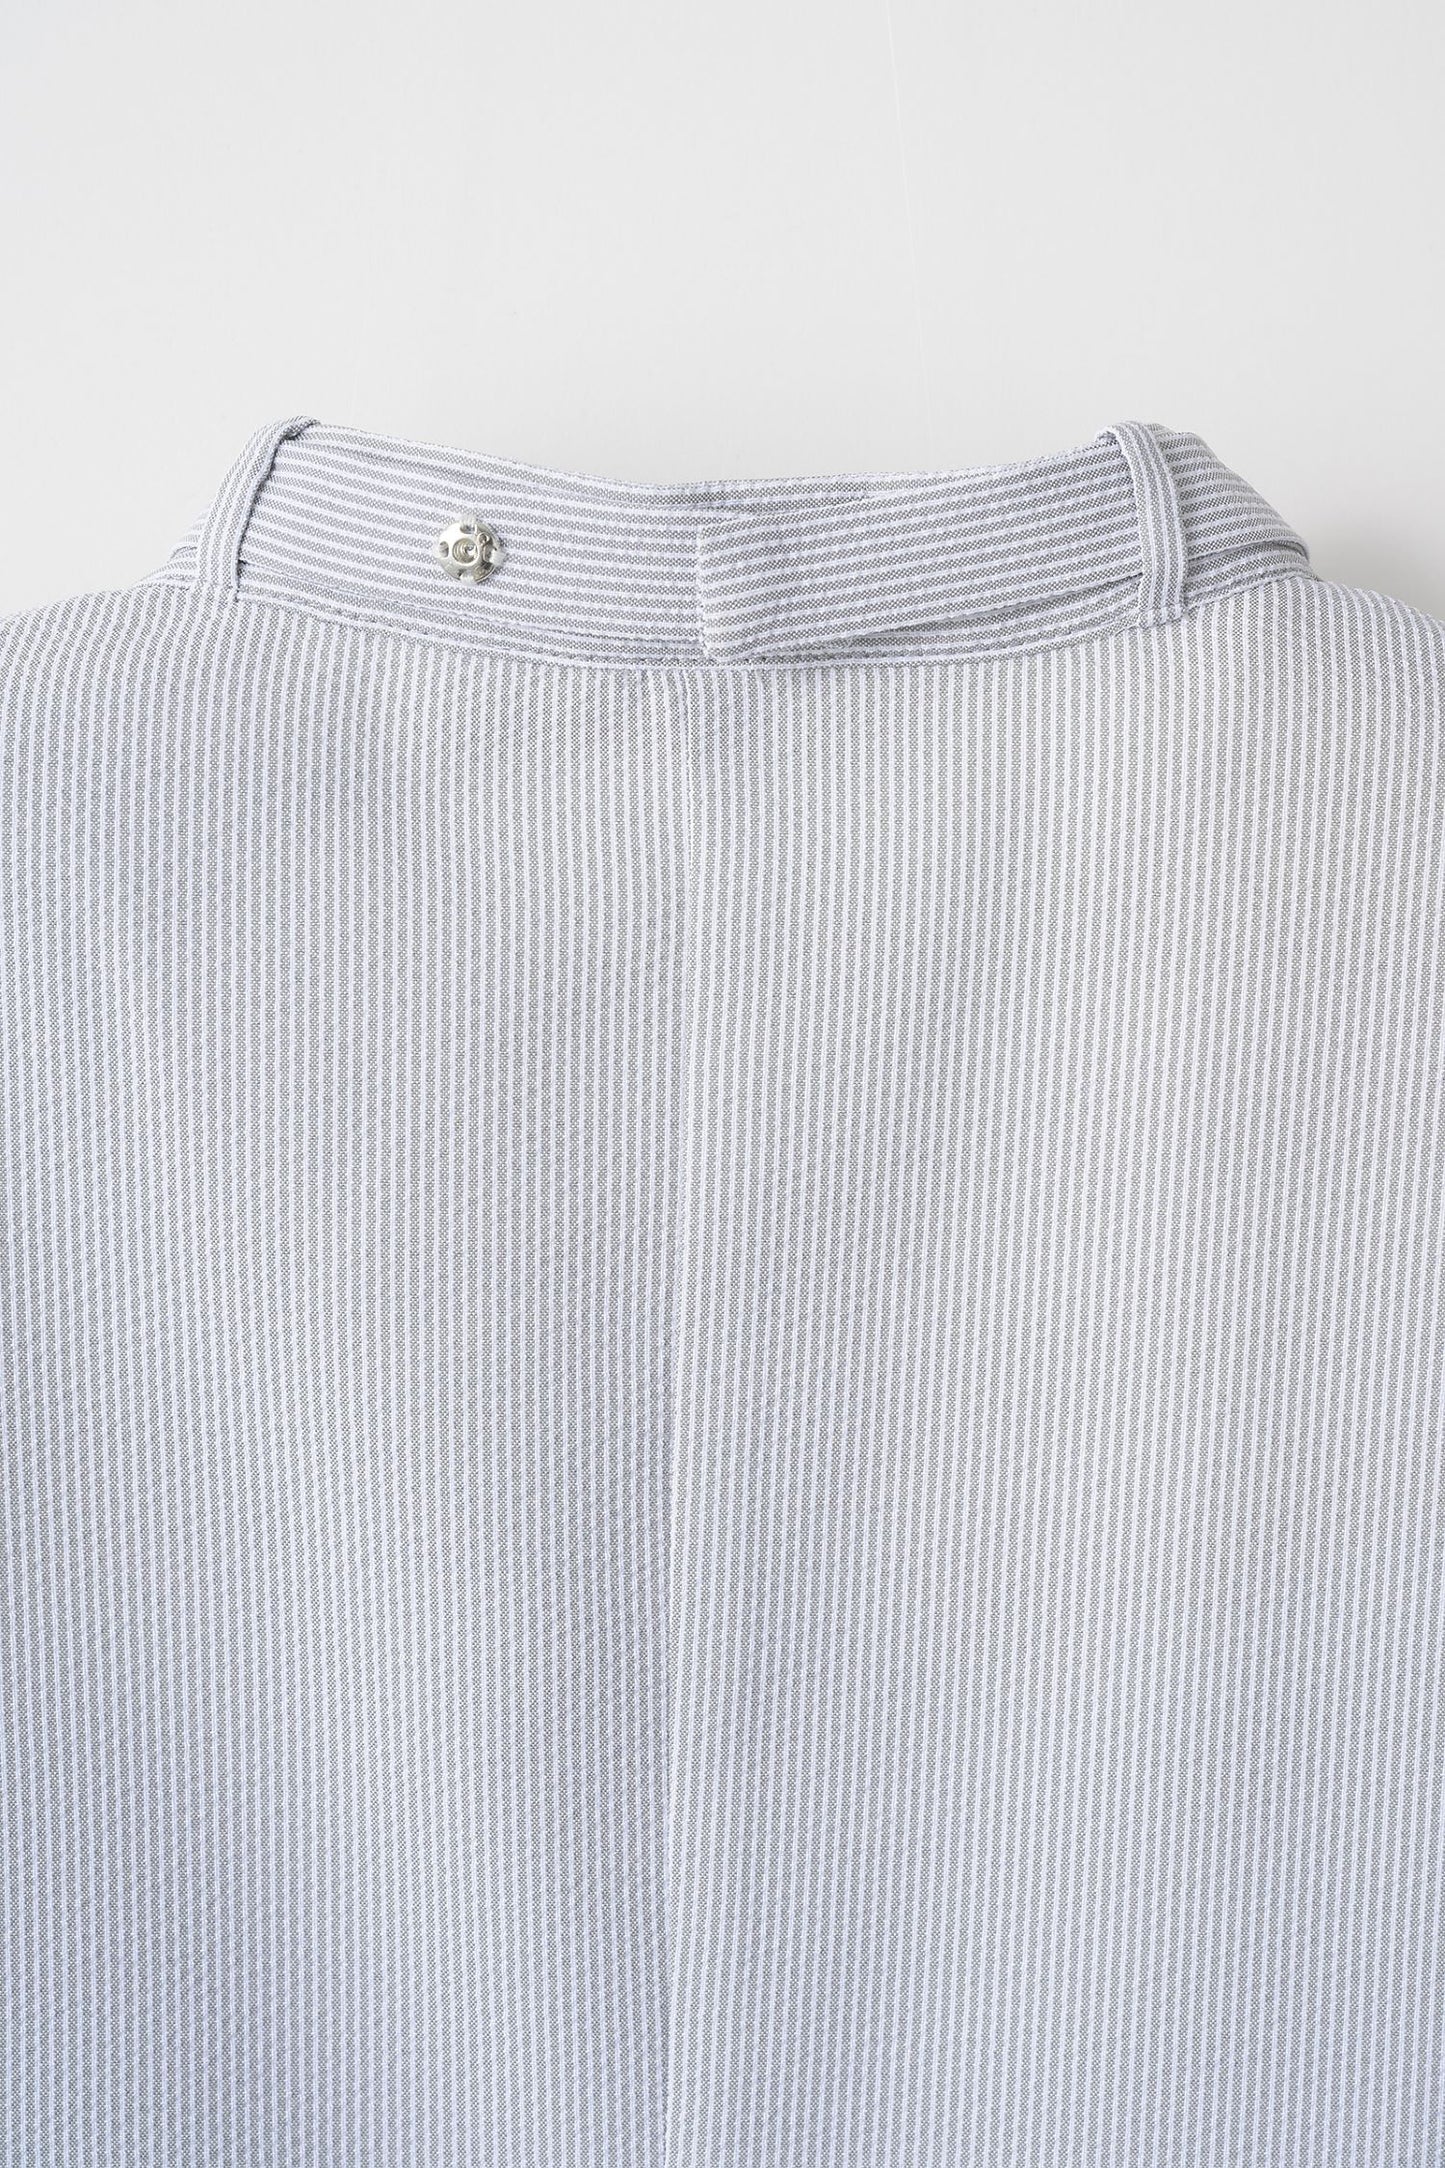 Urban lady blouse (Gray stripe)